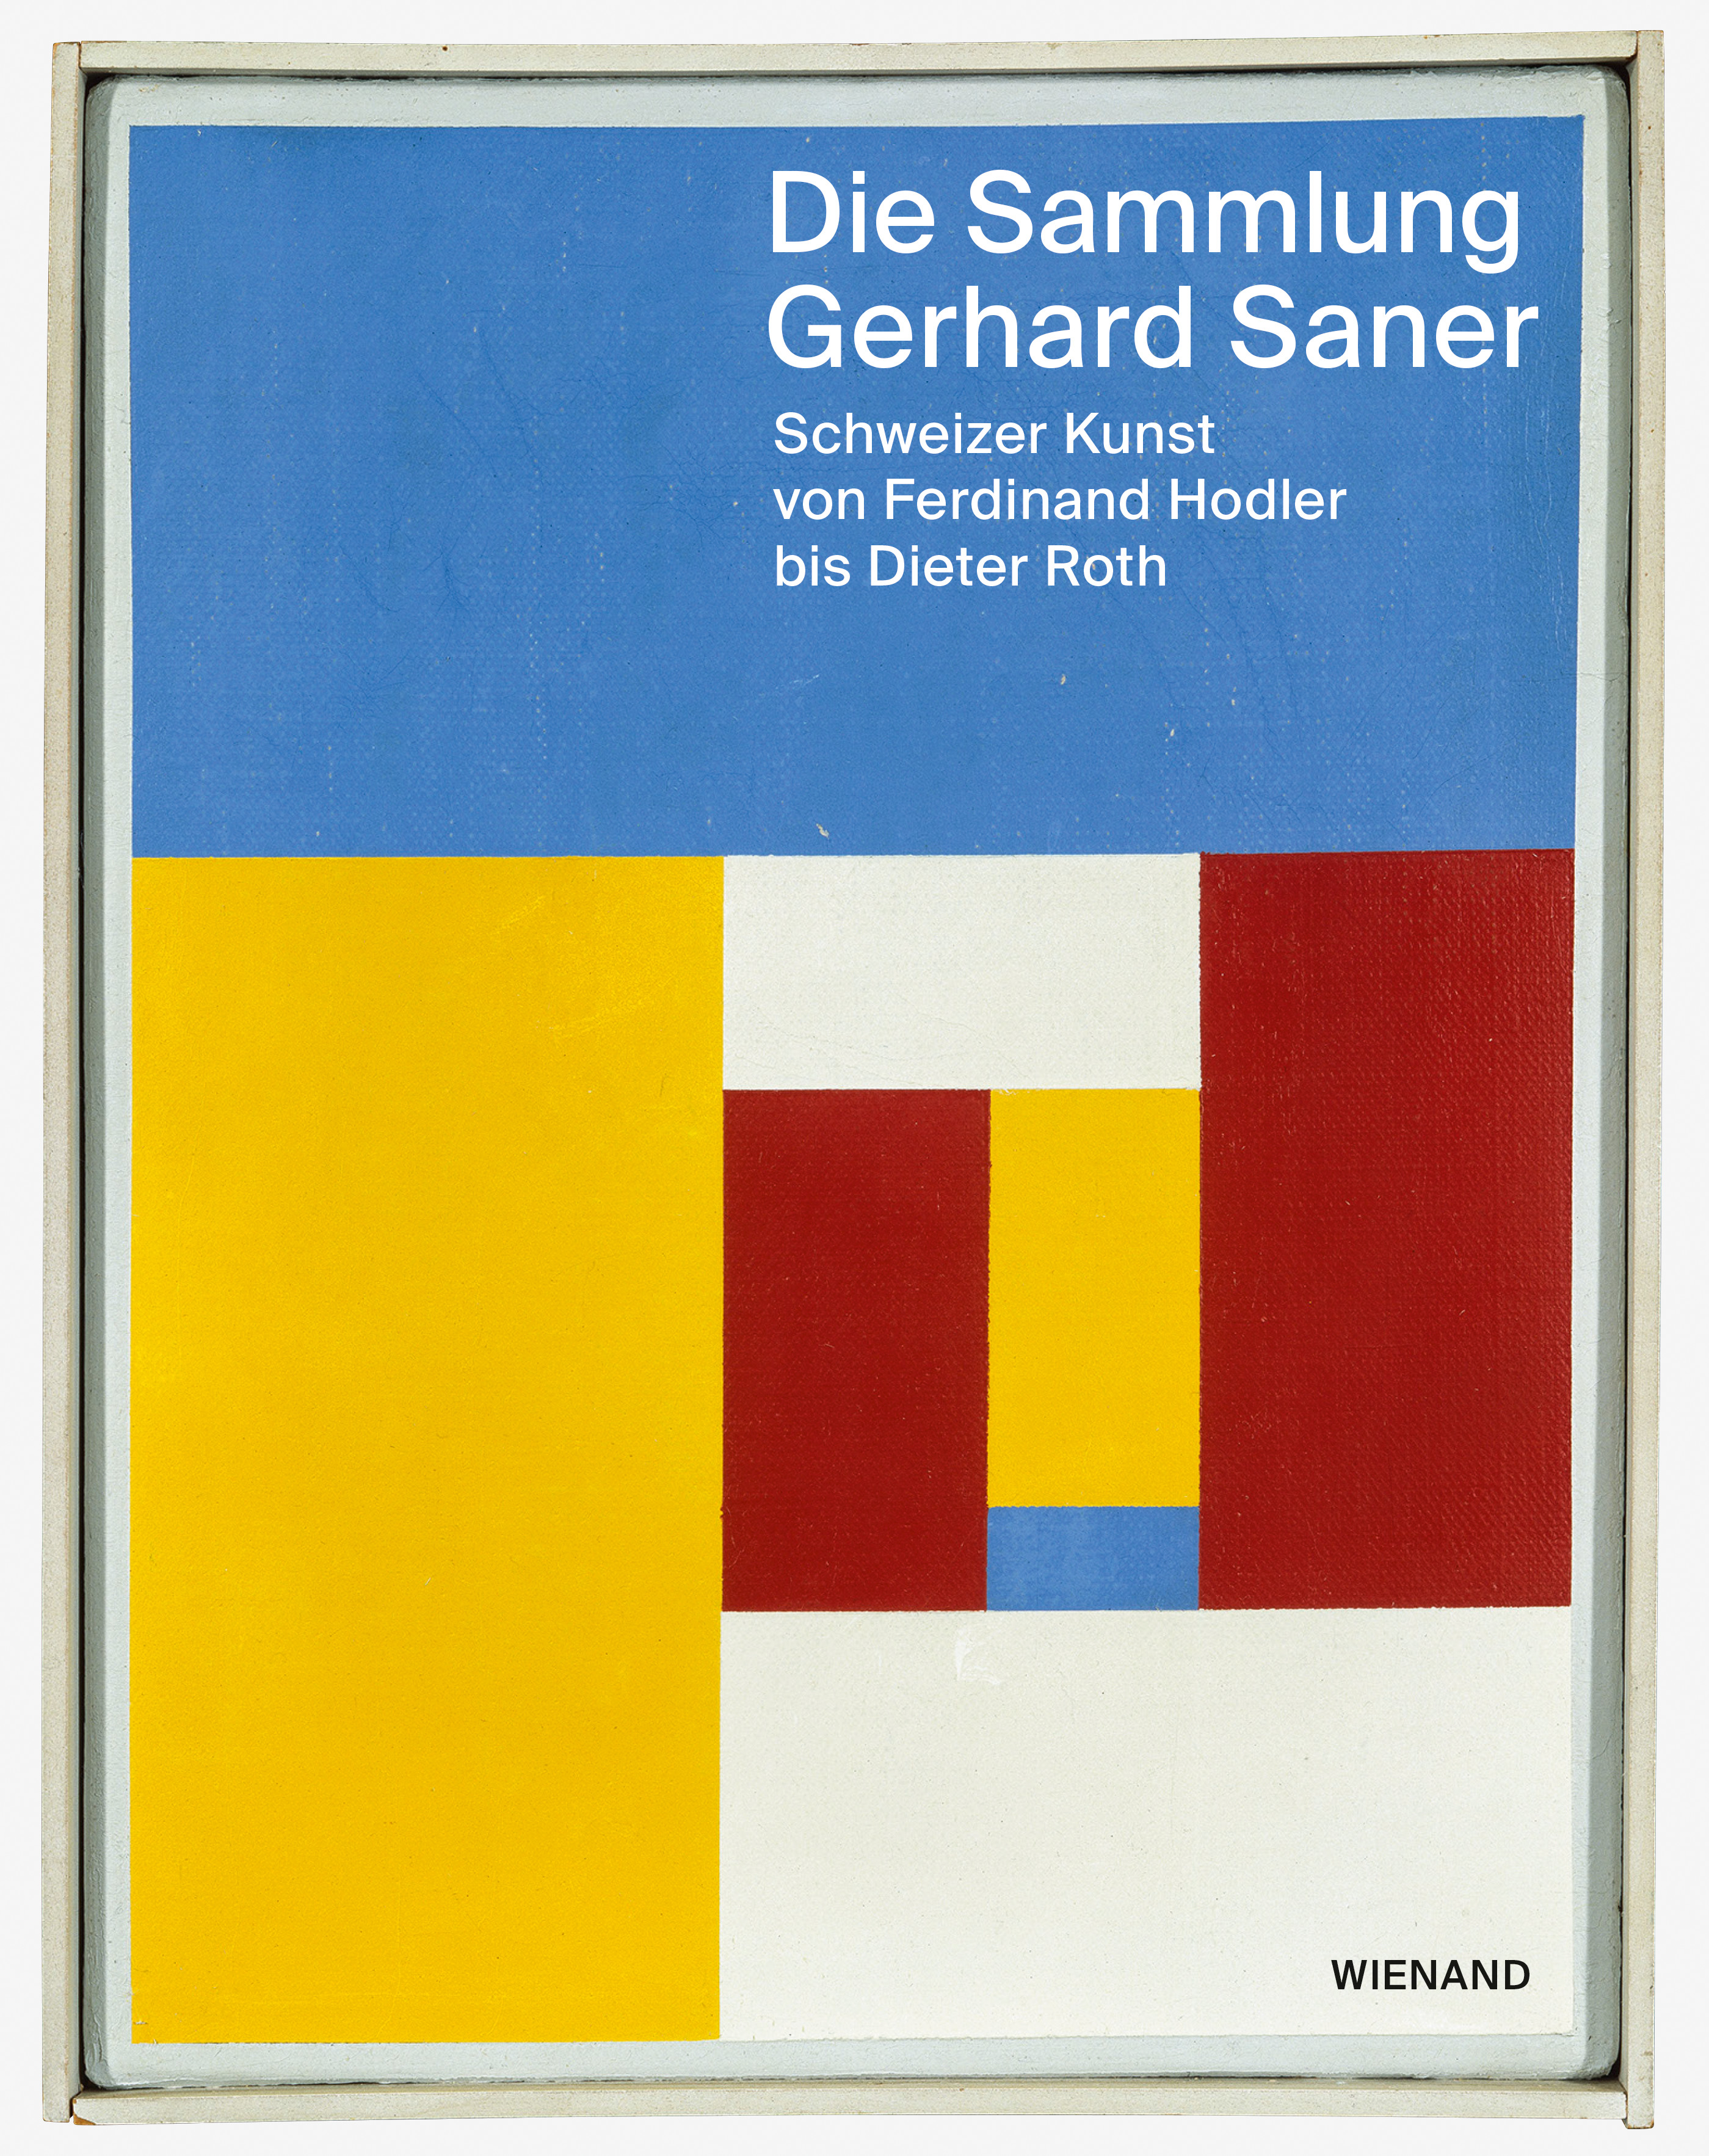 Die Sammlung Gerhard Saner. Schweizer Kunst von Ferdinand Hodler bis Dieter Roth